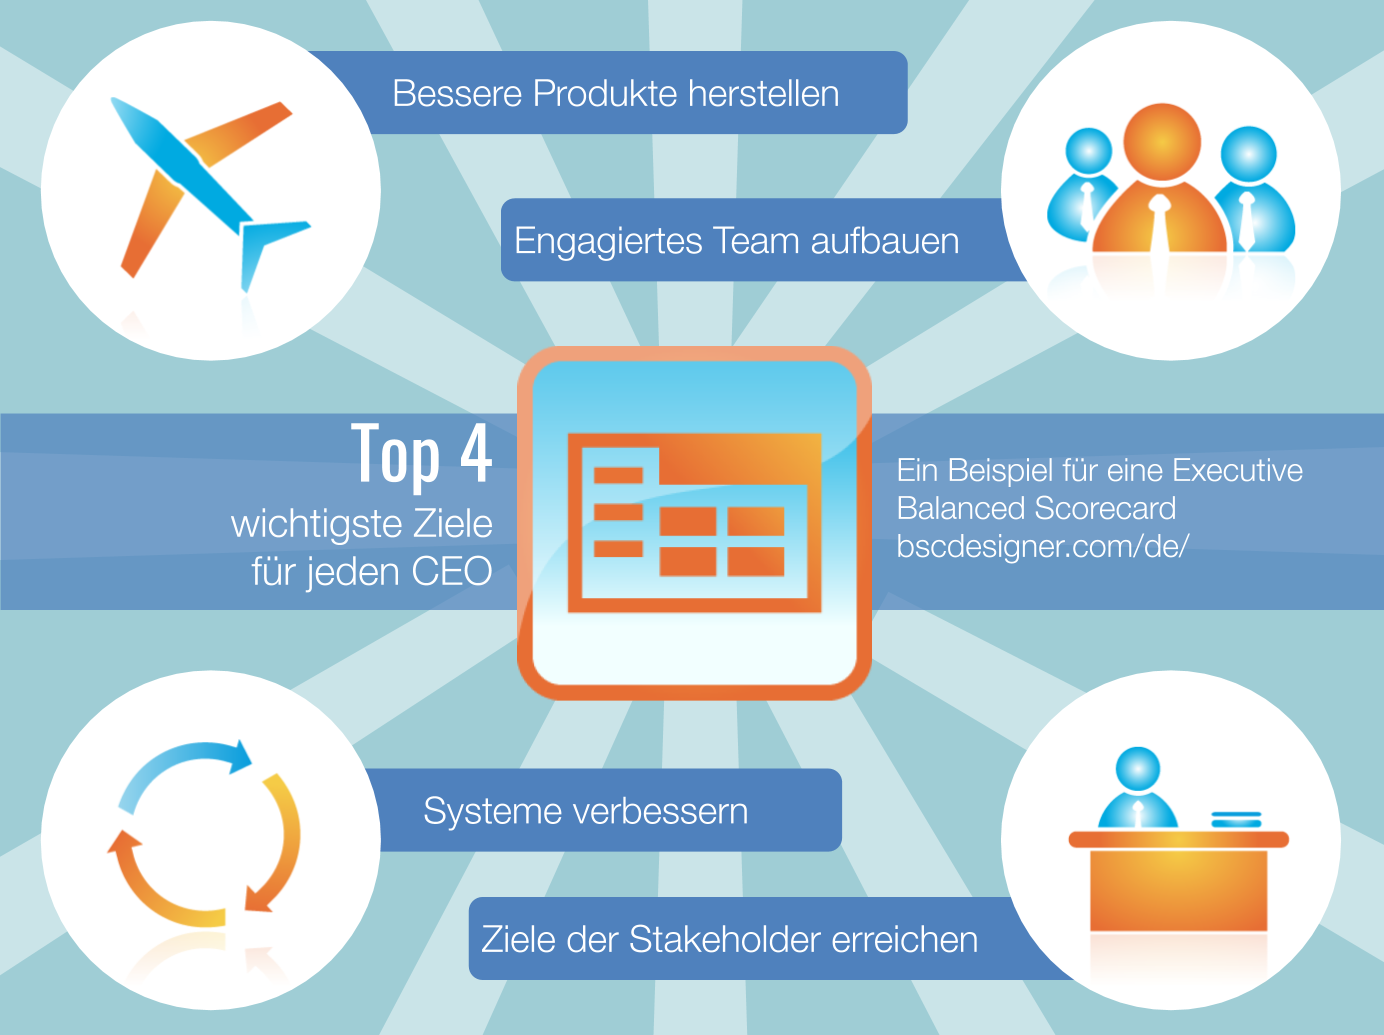 Top 4: Die wichtigsten Ziele/Strategien für jeden CEO